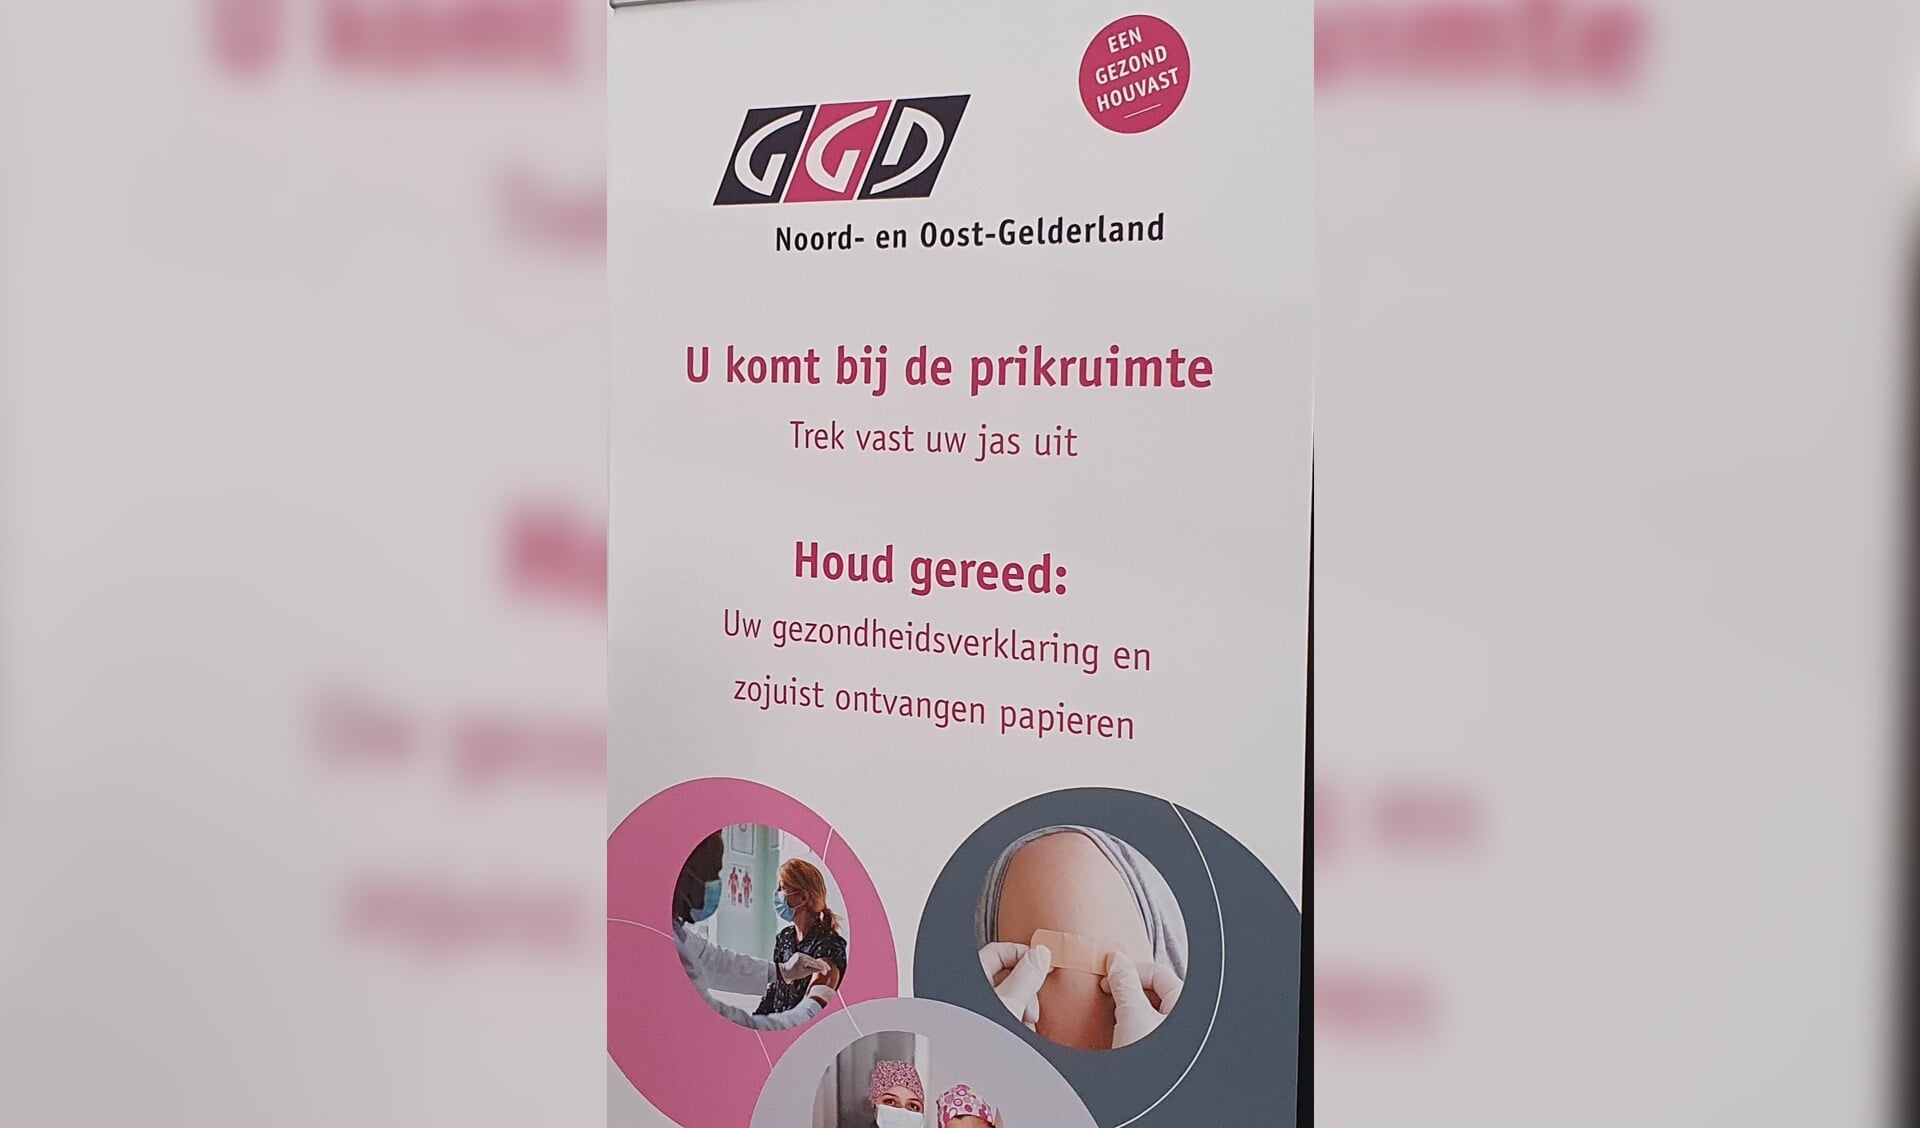 GGD Noord- en Oost-Gelderland vaccineert op zes locaties; twee locaties staan klaar om te worden ingericht. Foto: PR